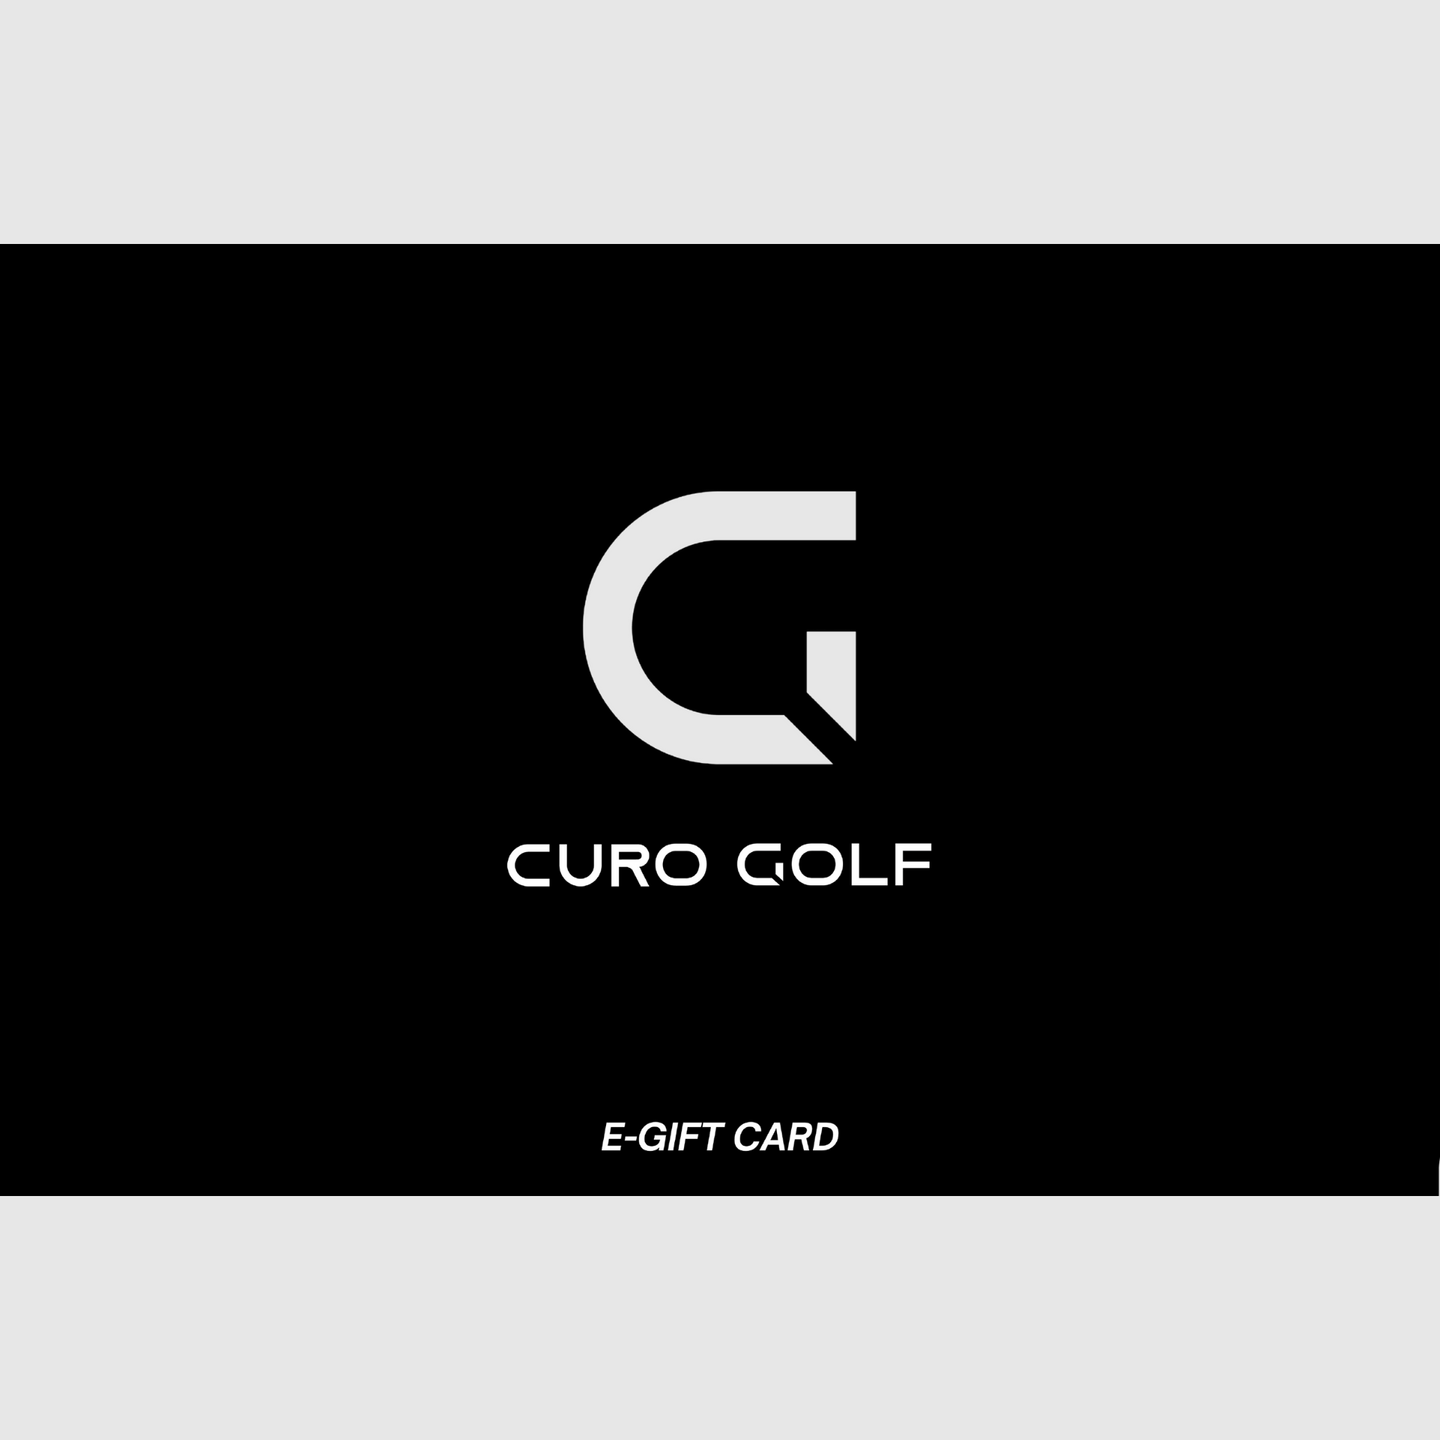 Curo Golf - Gift Card